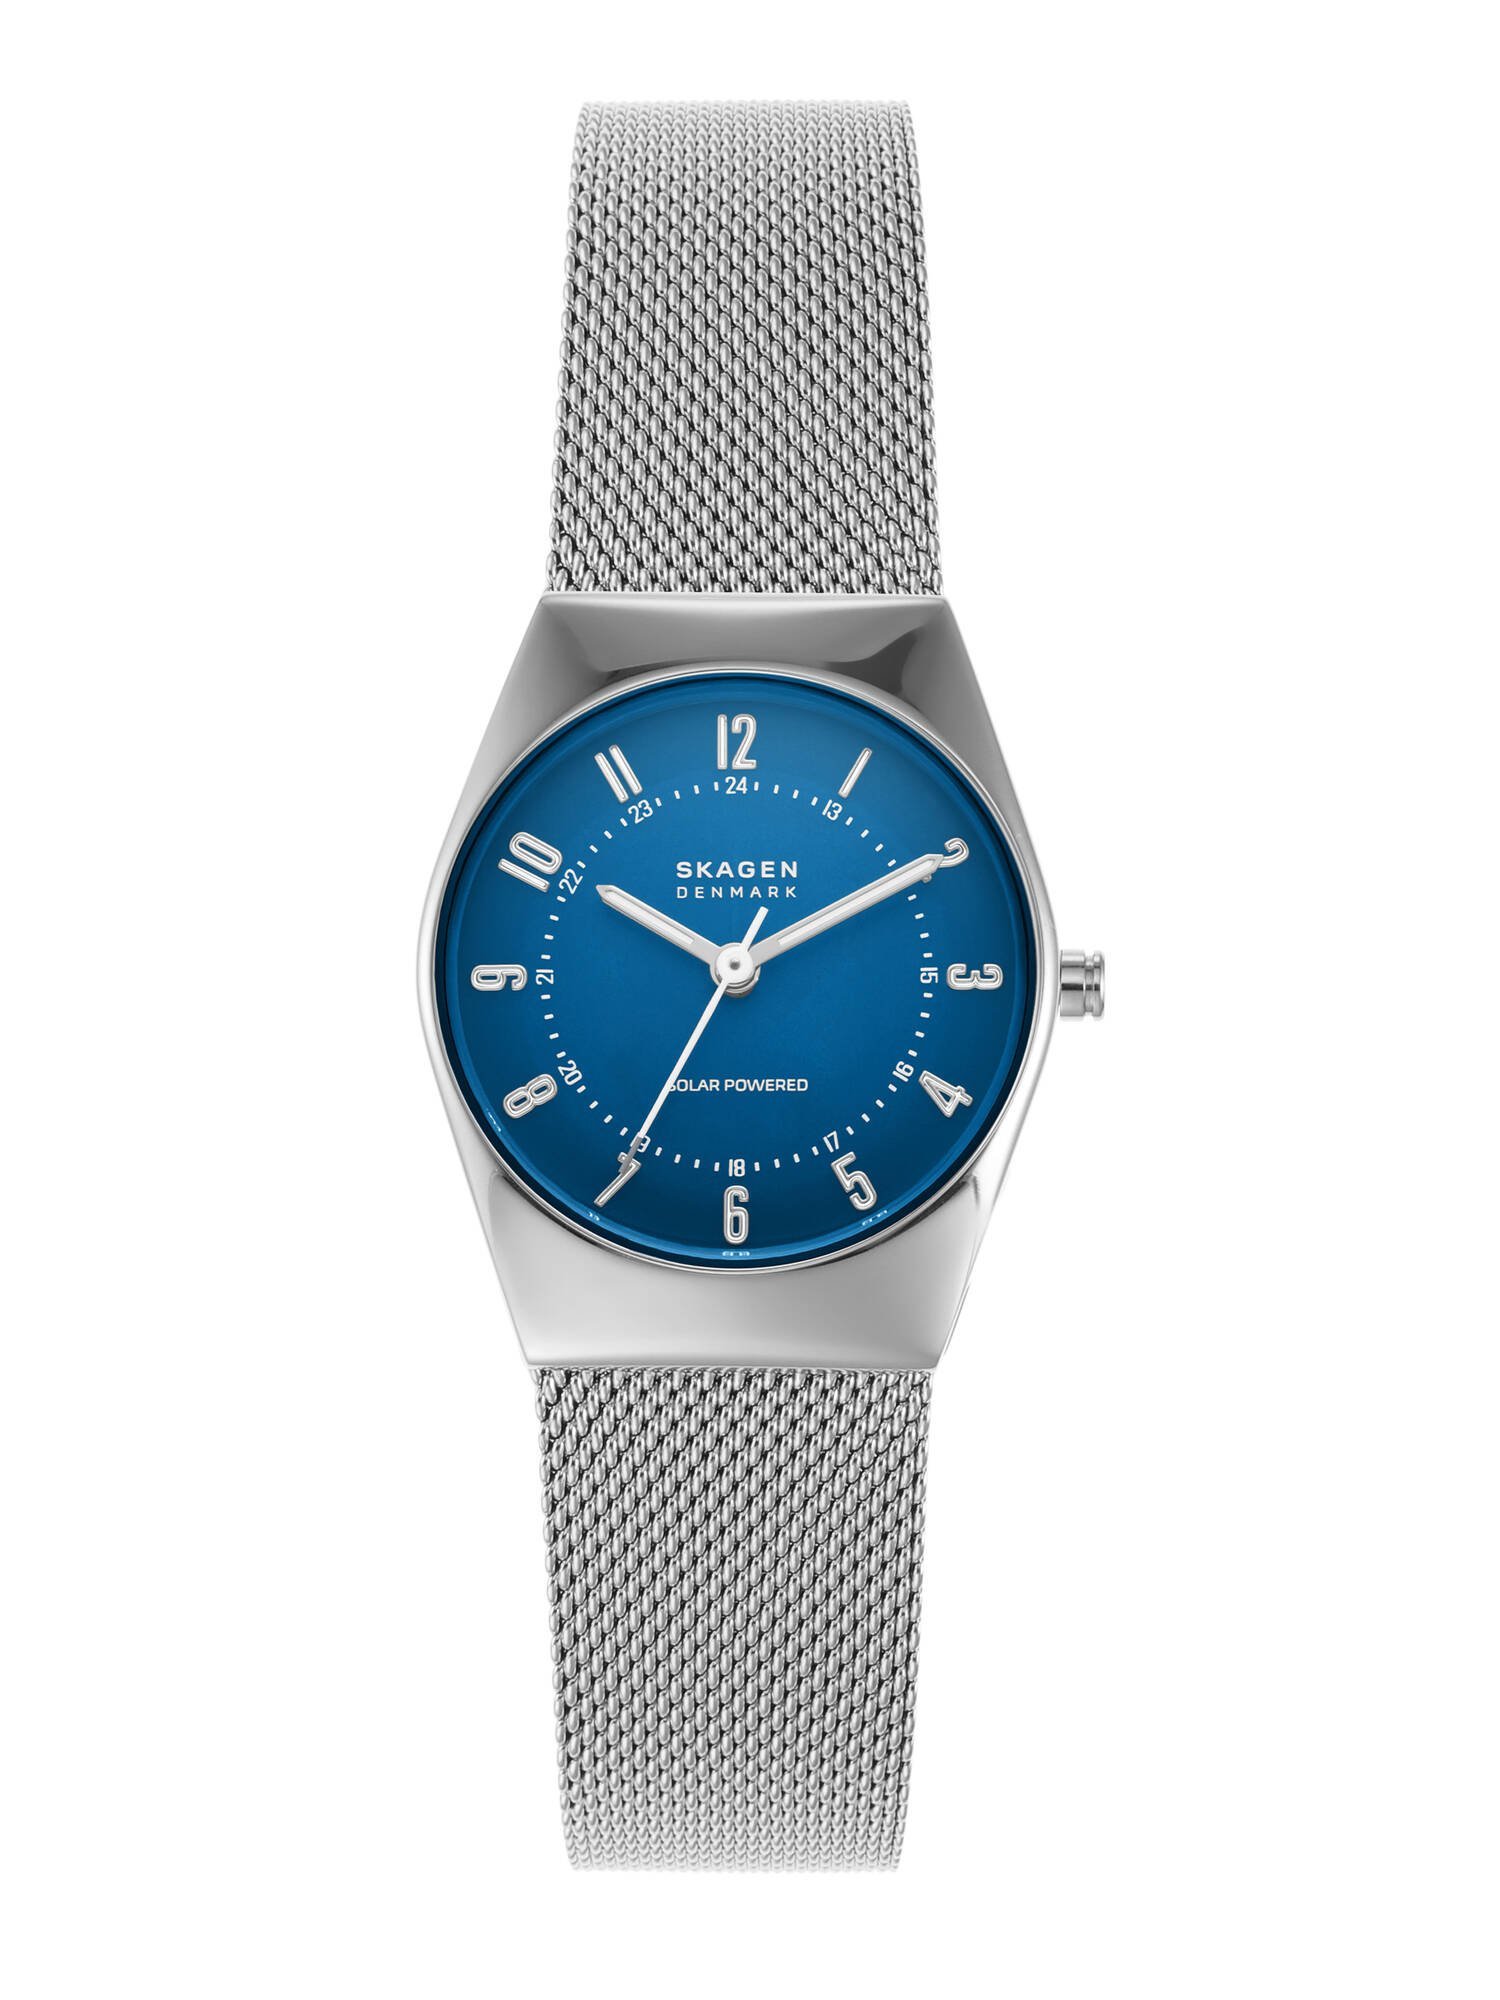 楽天Rakuten FashionSKAGEN Grenen Lille SKW3080 スカーゲン アクセサリー・腕時計 腕時計 シルバー【送料無料】